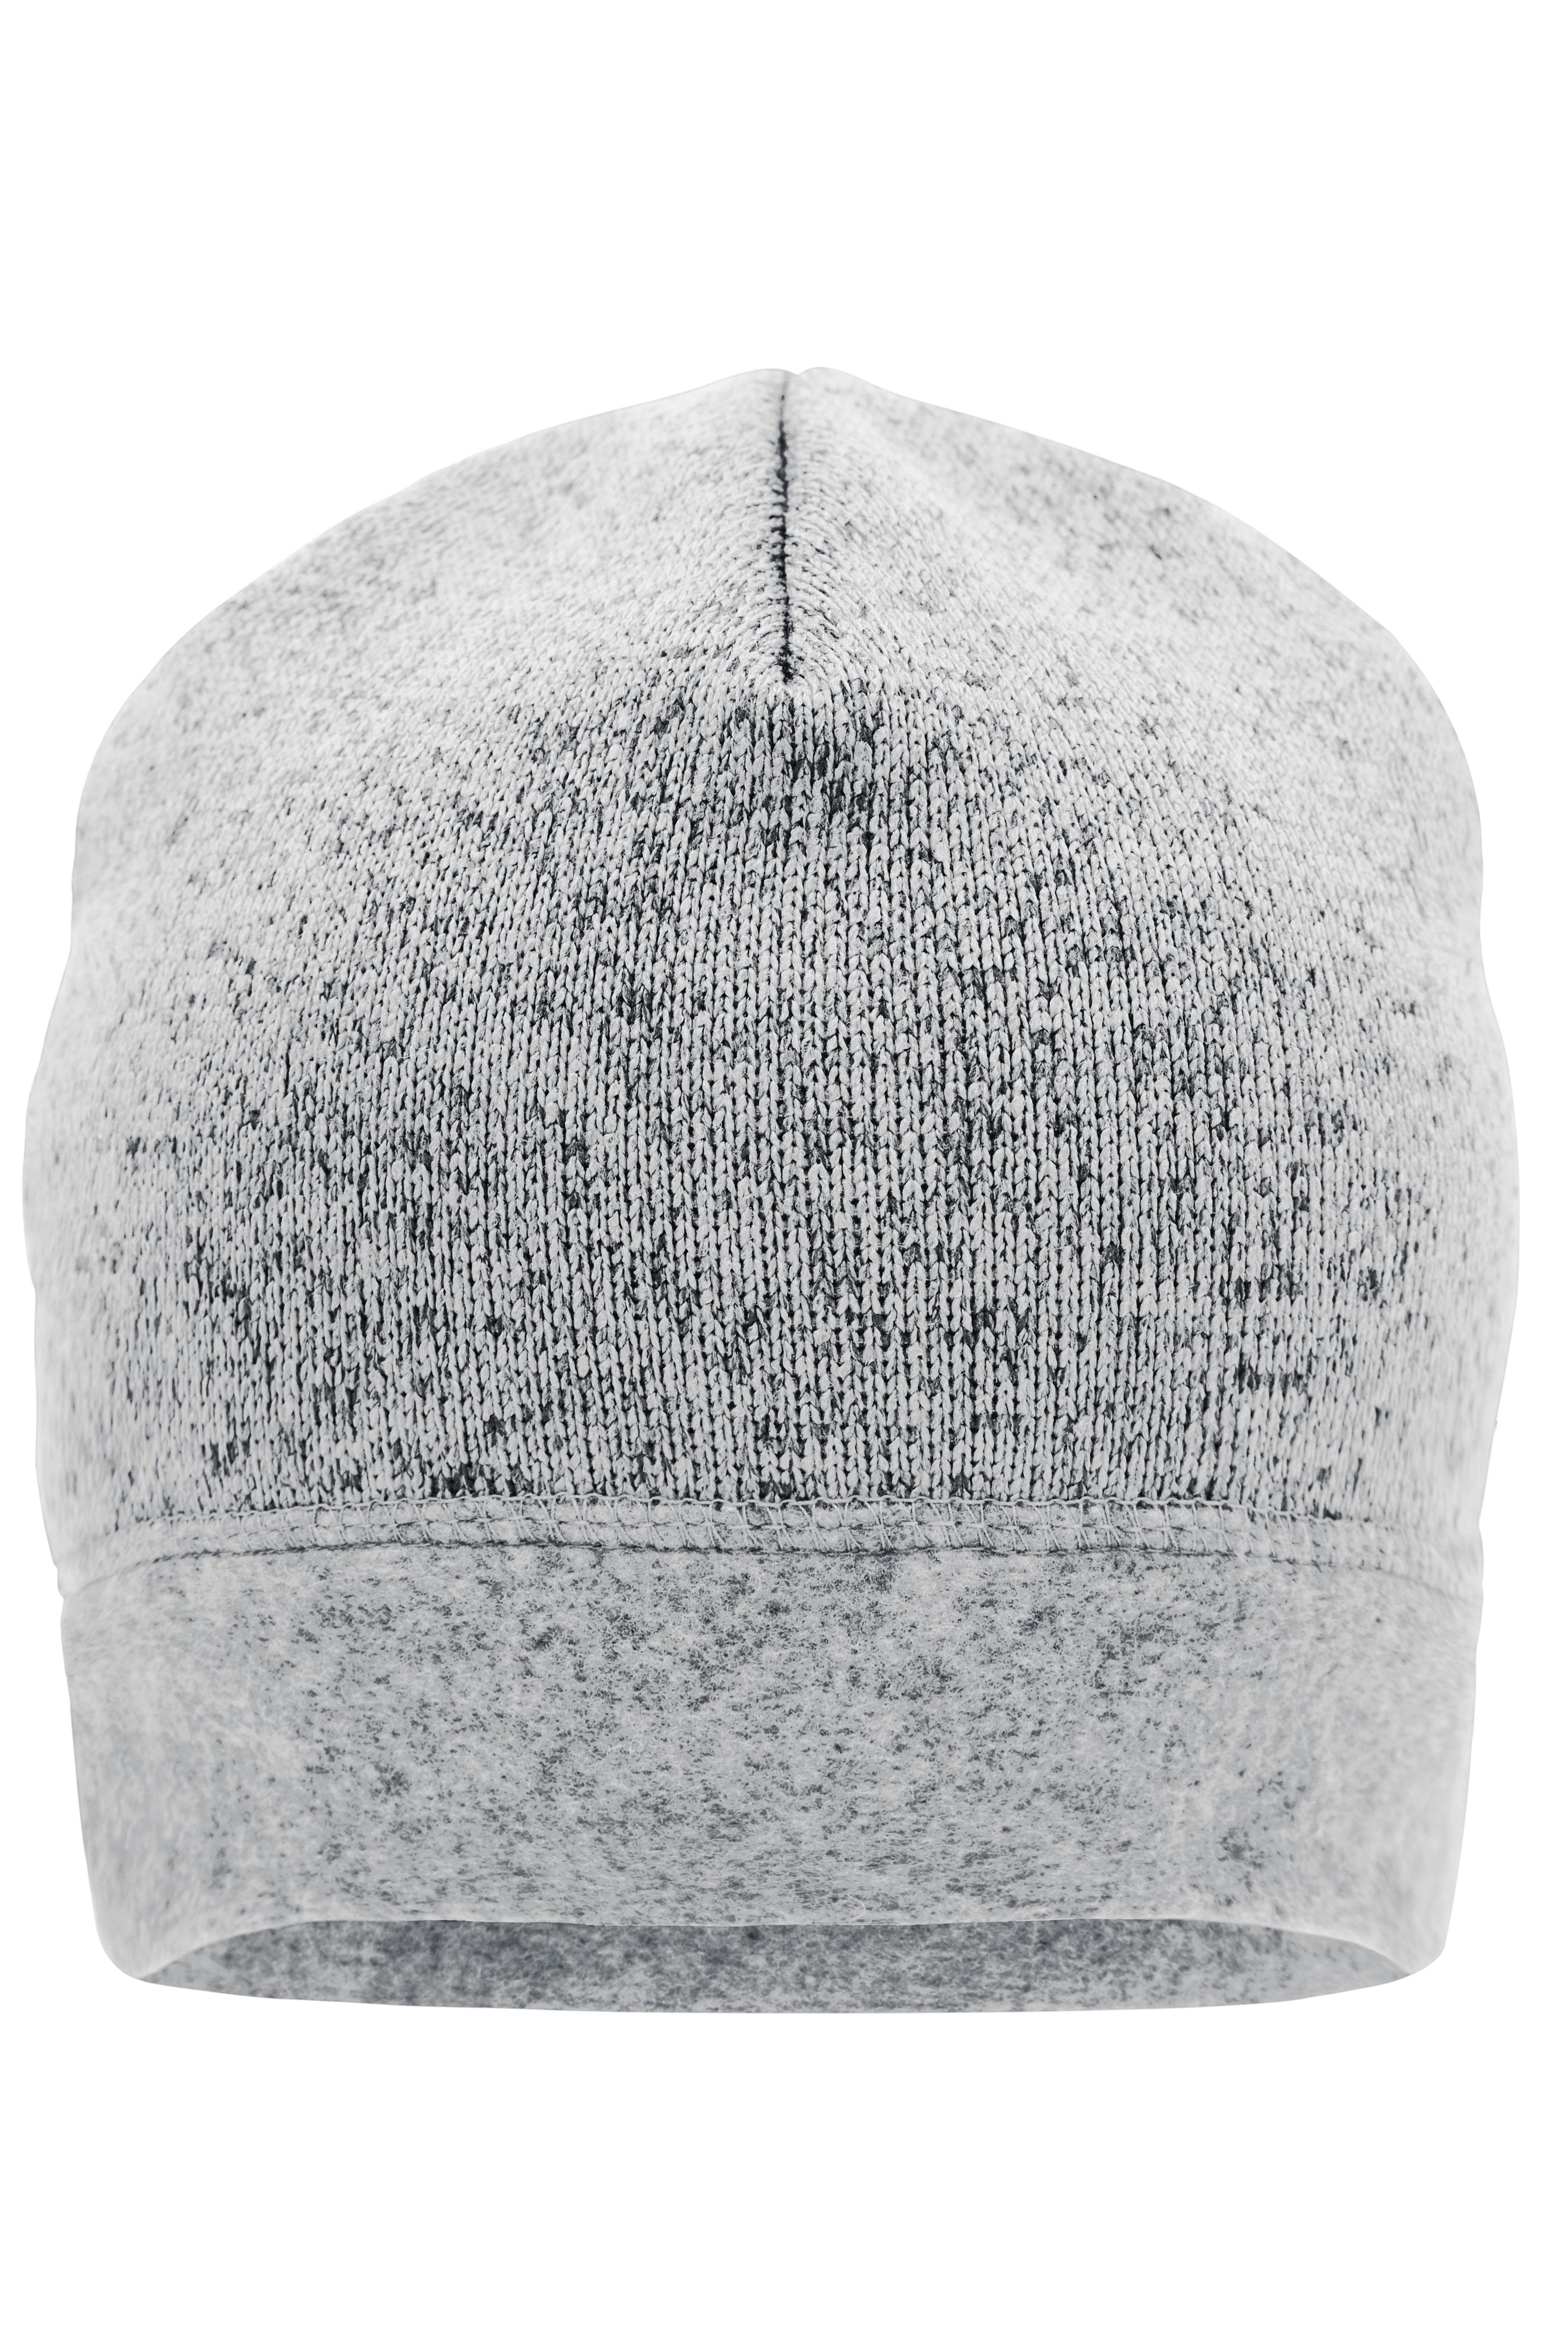 DAMEN Accessoires Hut und Mütze Grau Sfera Hut und Mütze Rabatt 98 % Grau Einheitlich 